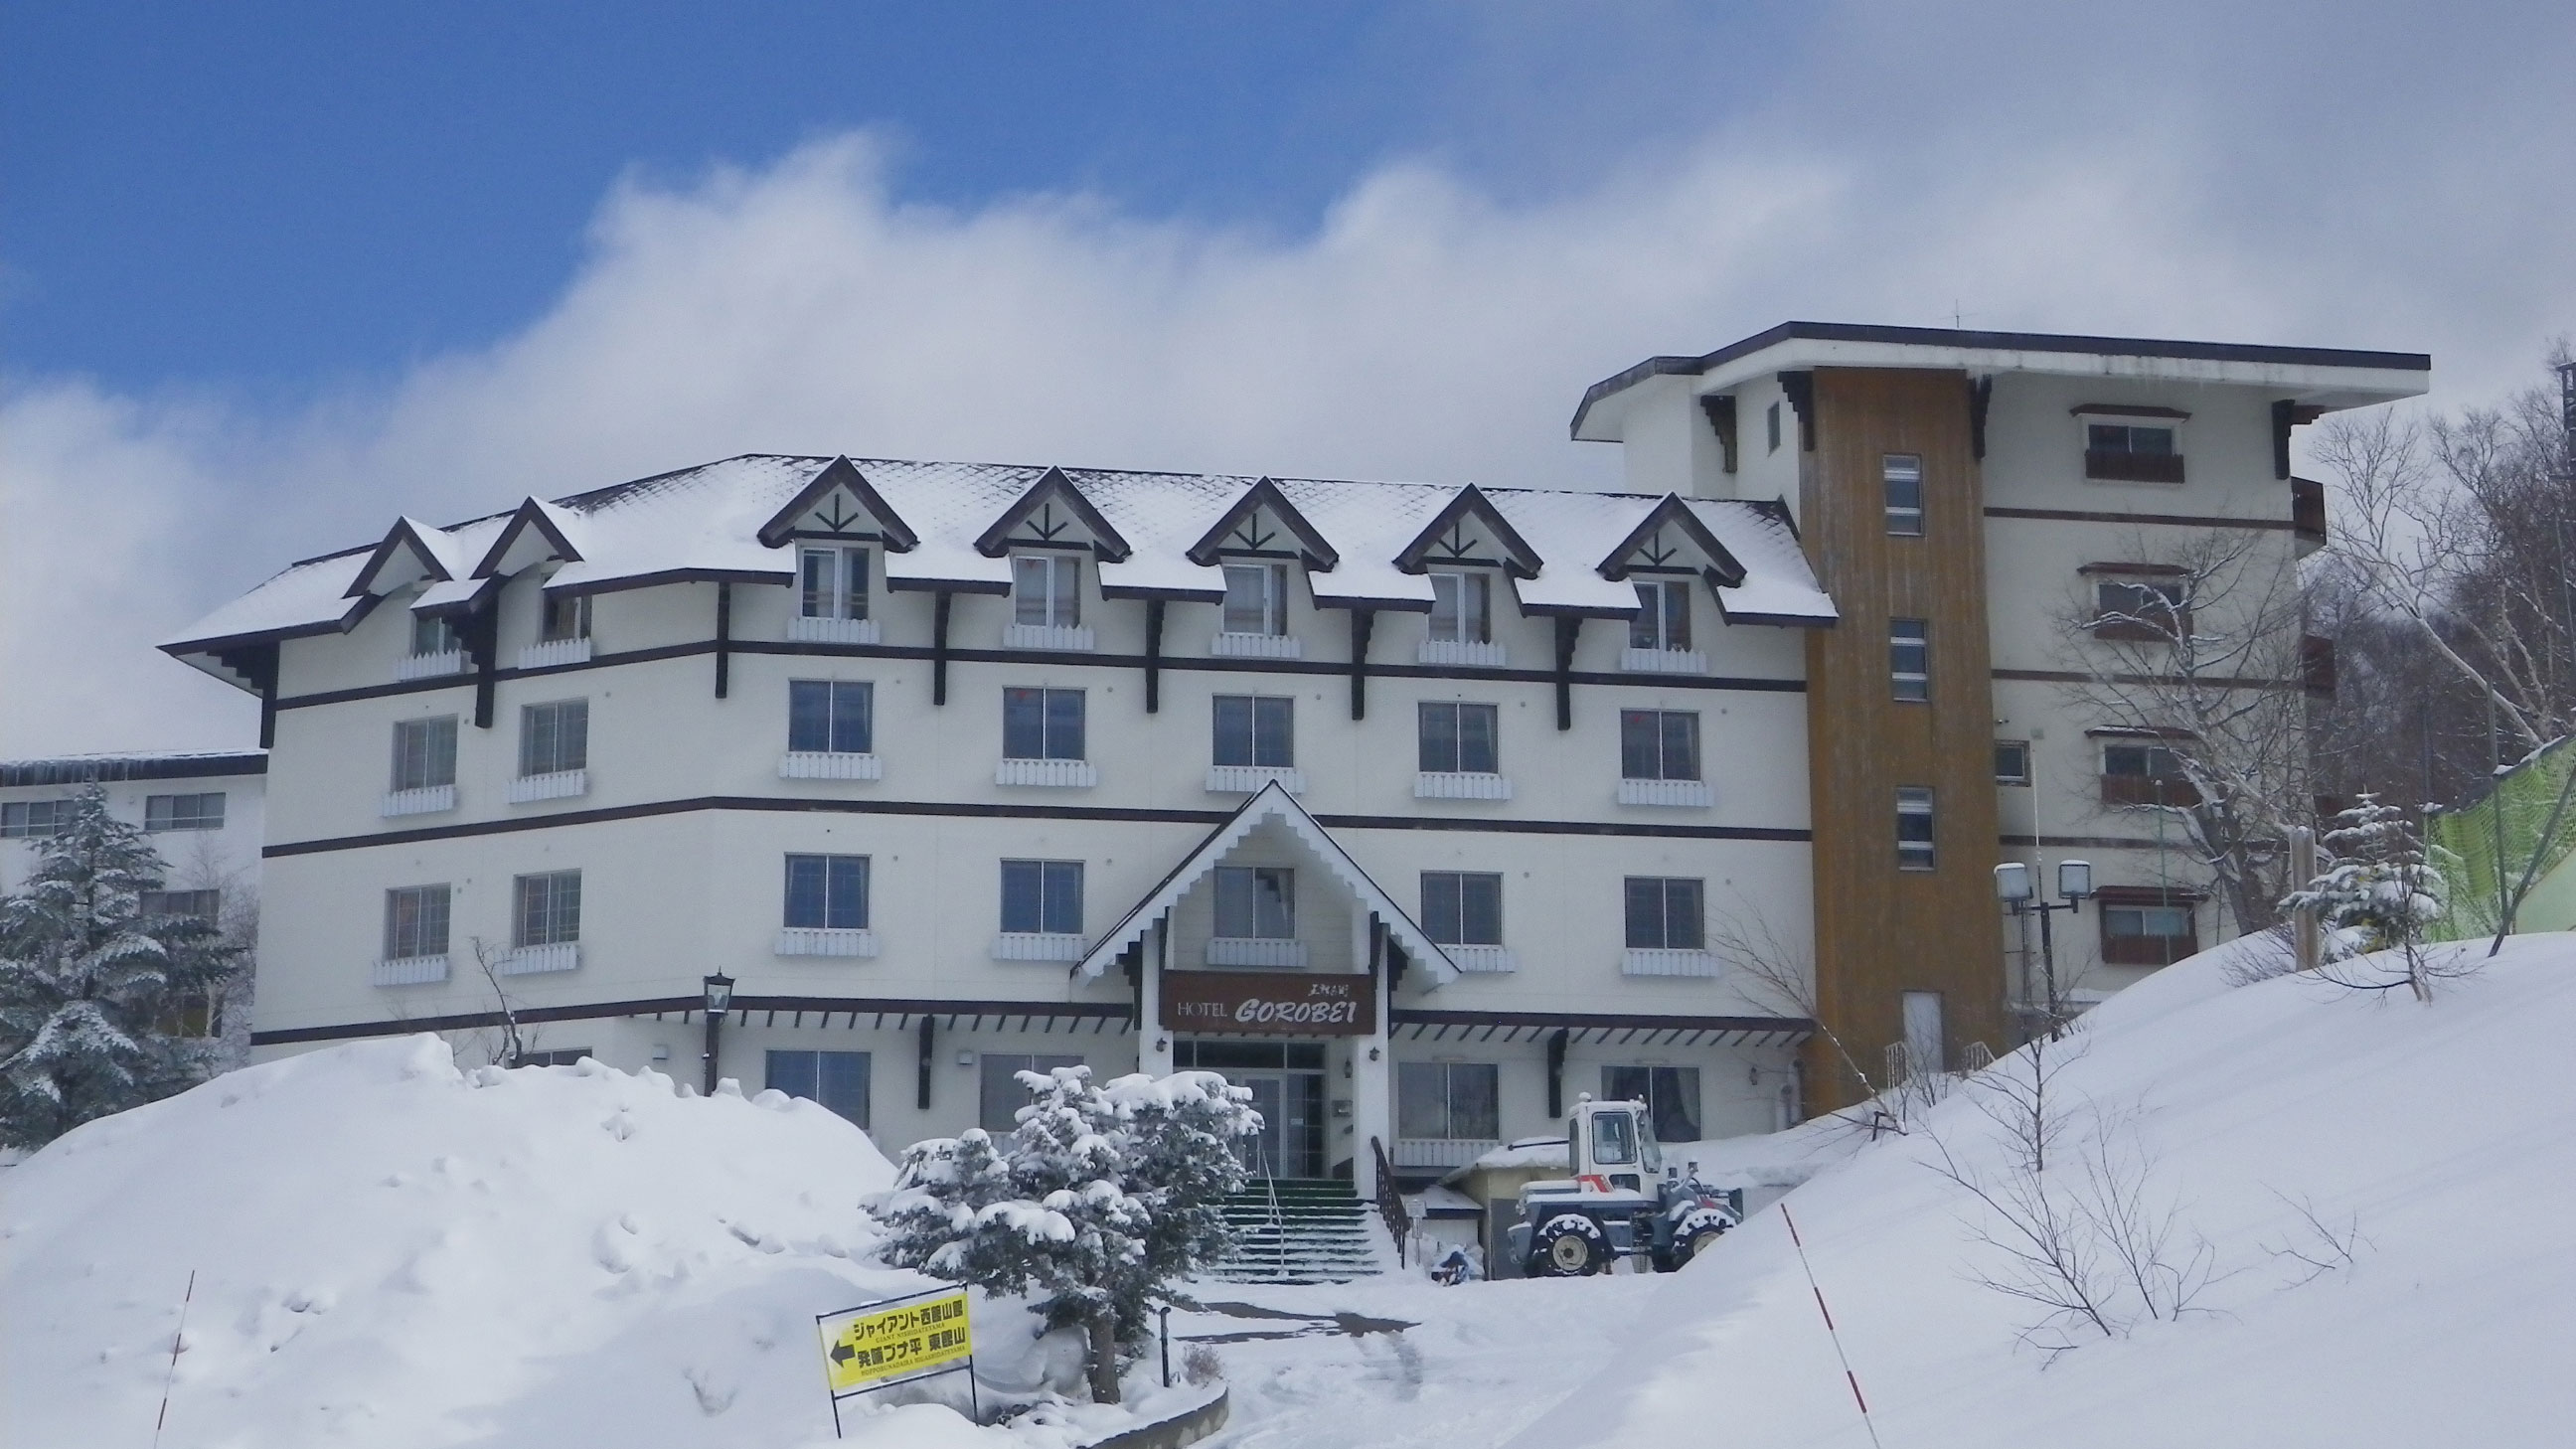 Maruike Onsen Hotel Gorobei